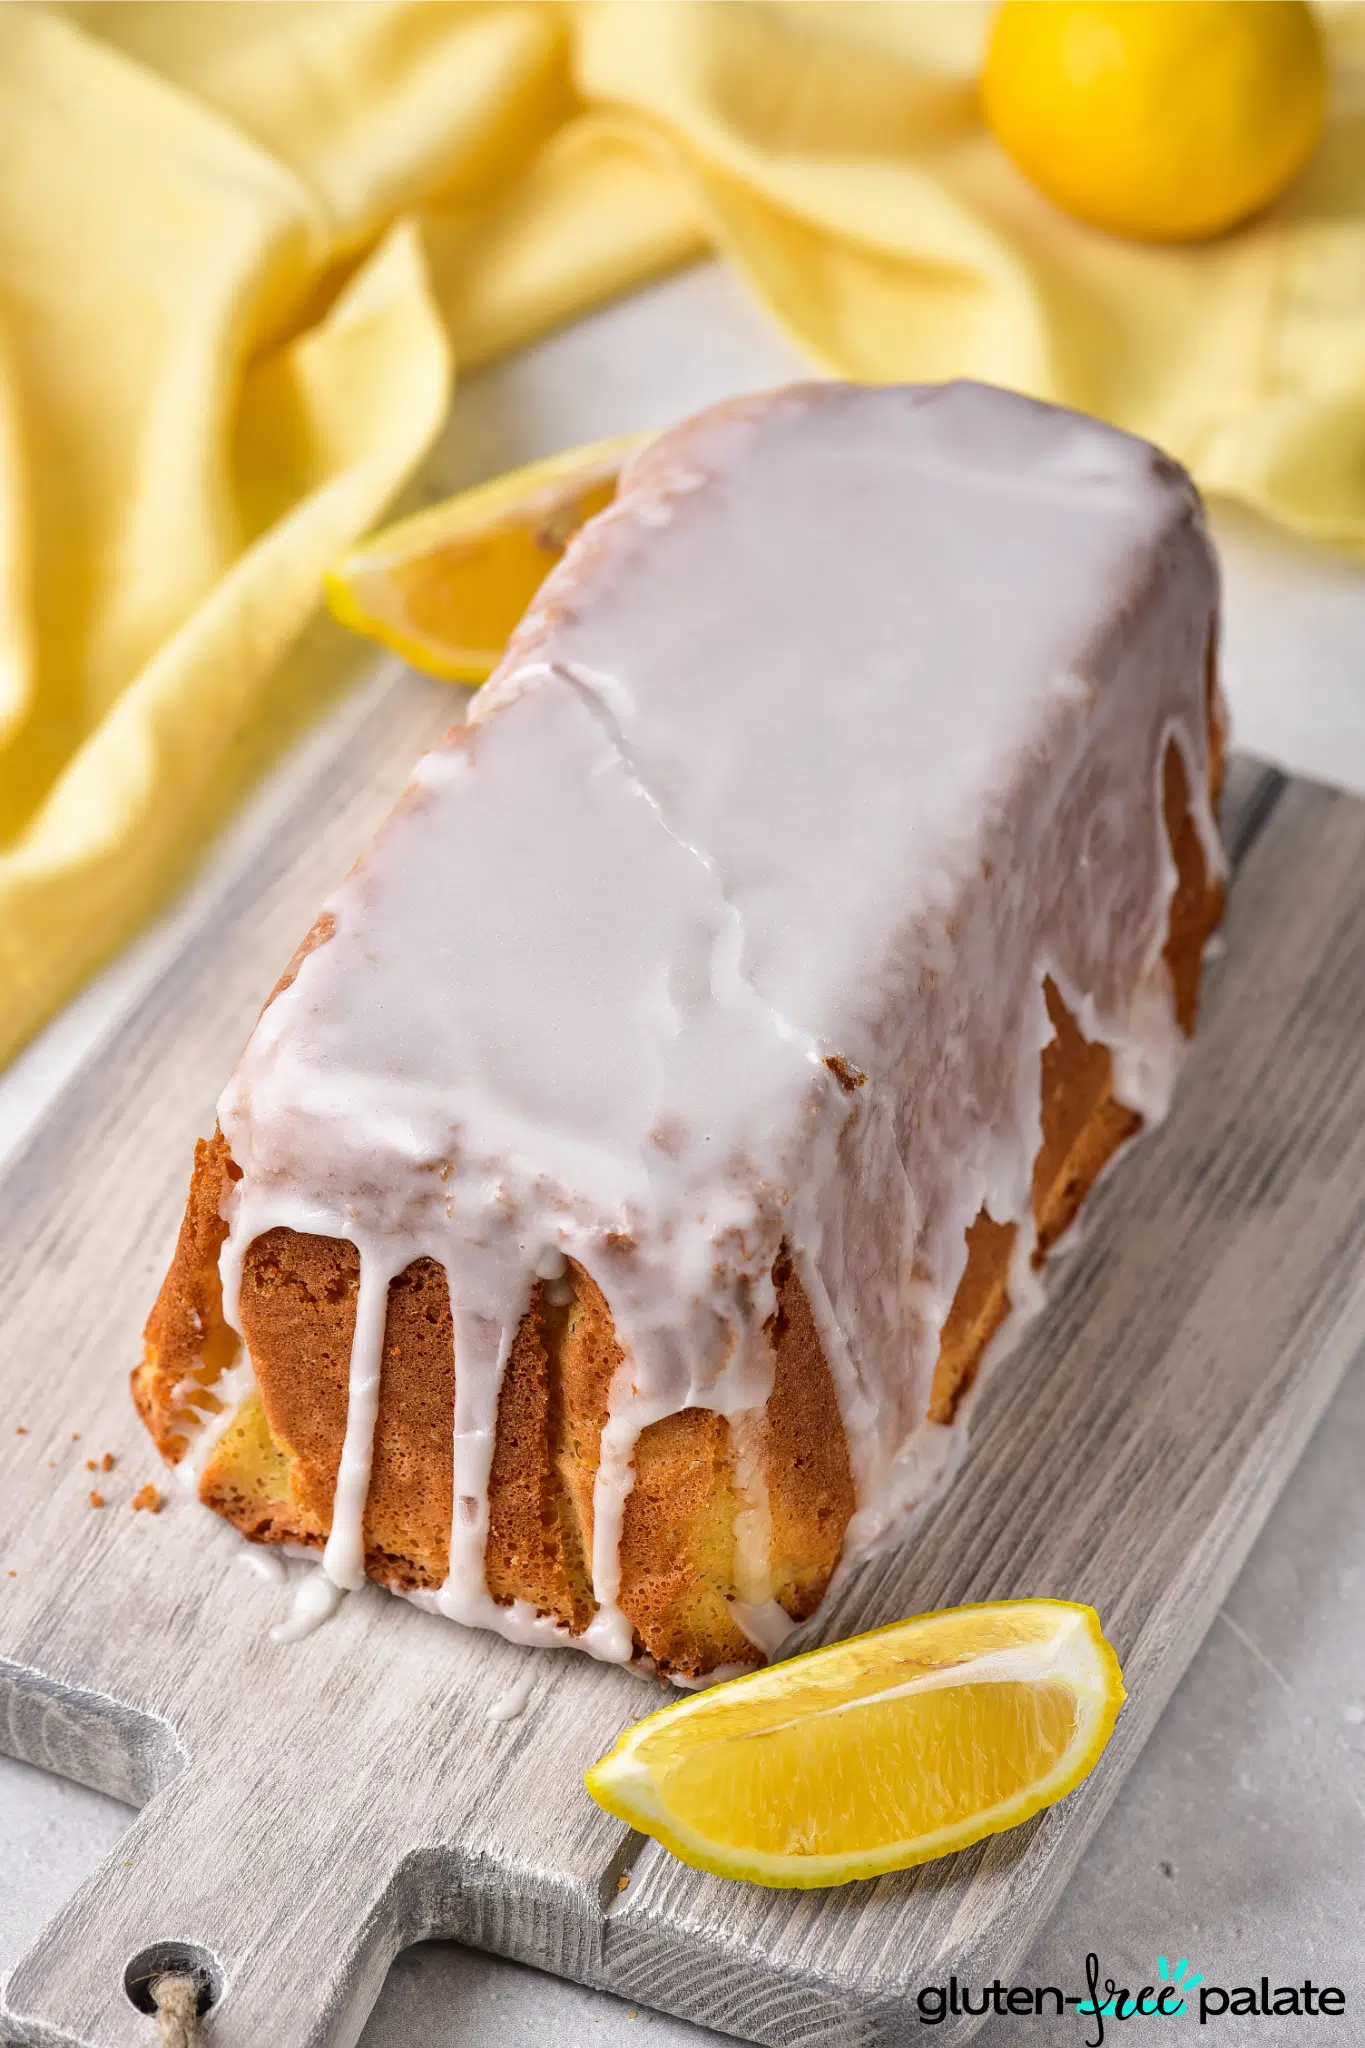 Gluten-free lemon drizzle cake on a board.